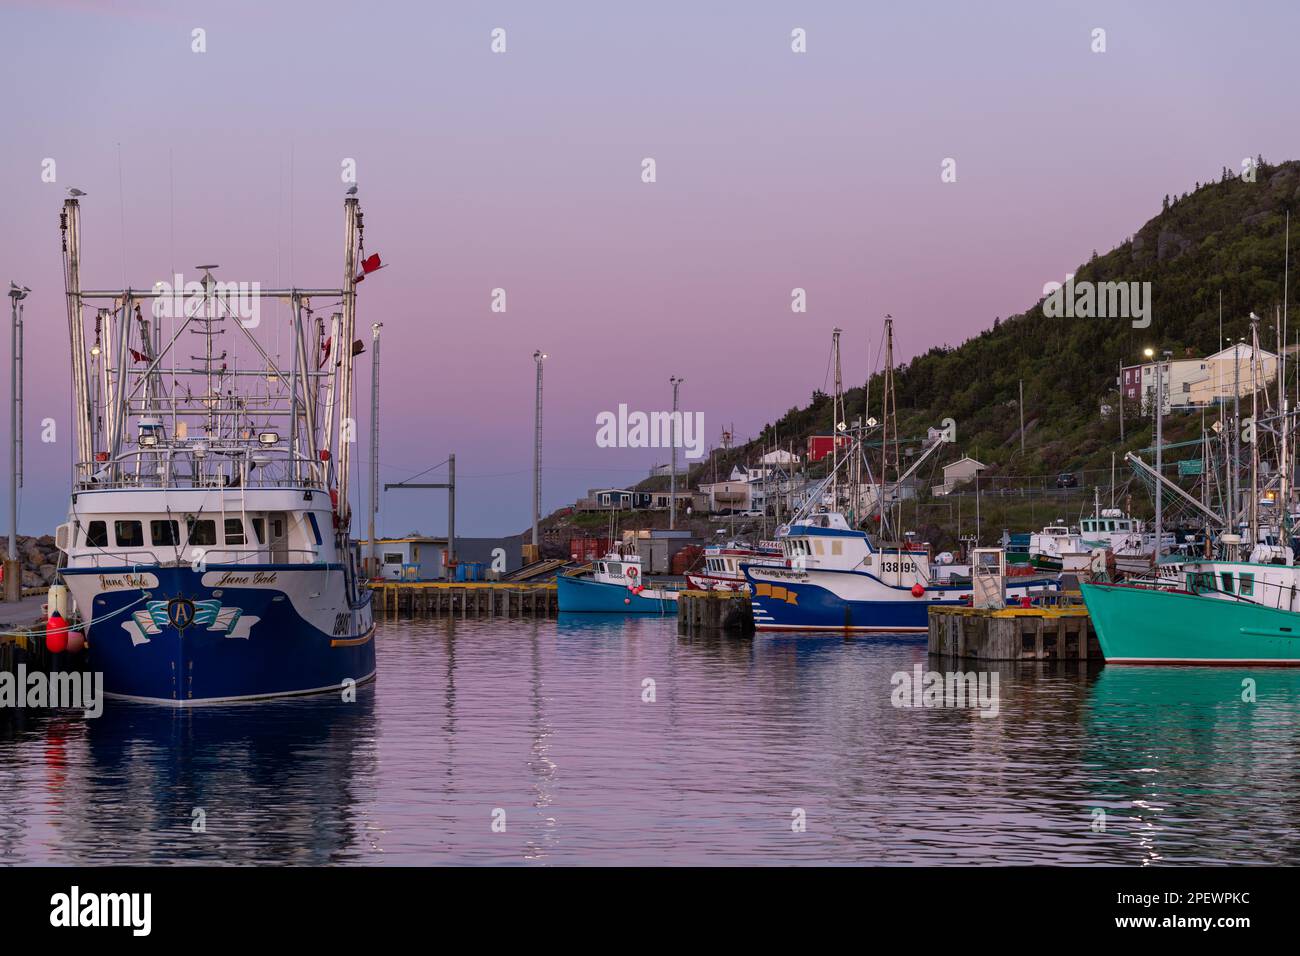 Plusieurs bateaux de pêche au crabe, à la morue et à la crevette de couleur bleue et blanche sont attachés au quai de St. John's Harbour. Le bateau est chargé de matériel de pêche. Banque D'Images